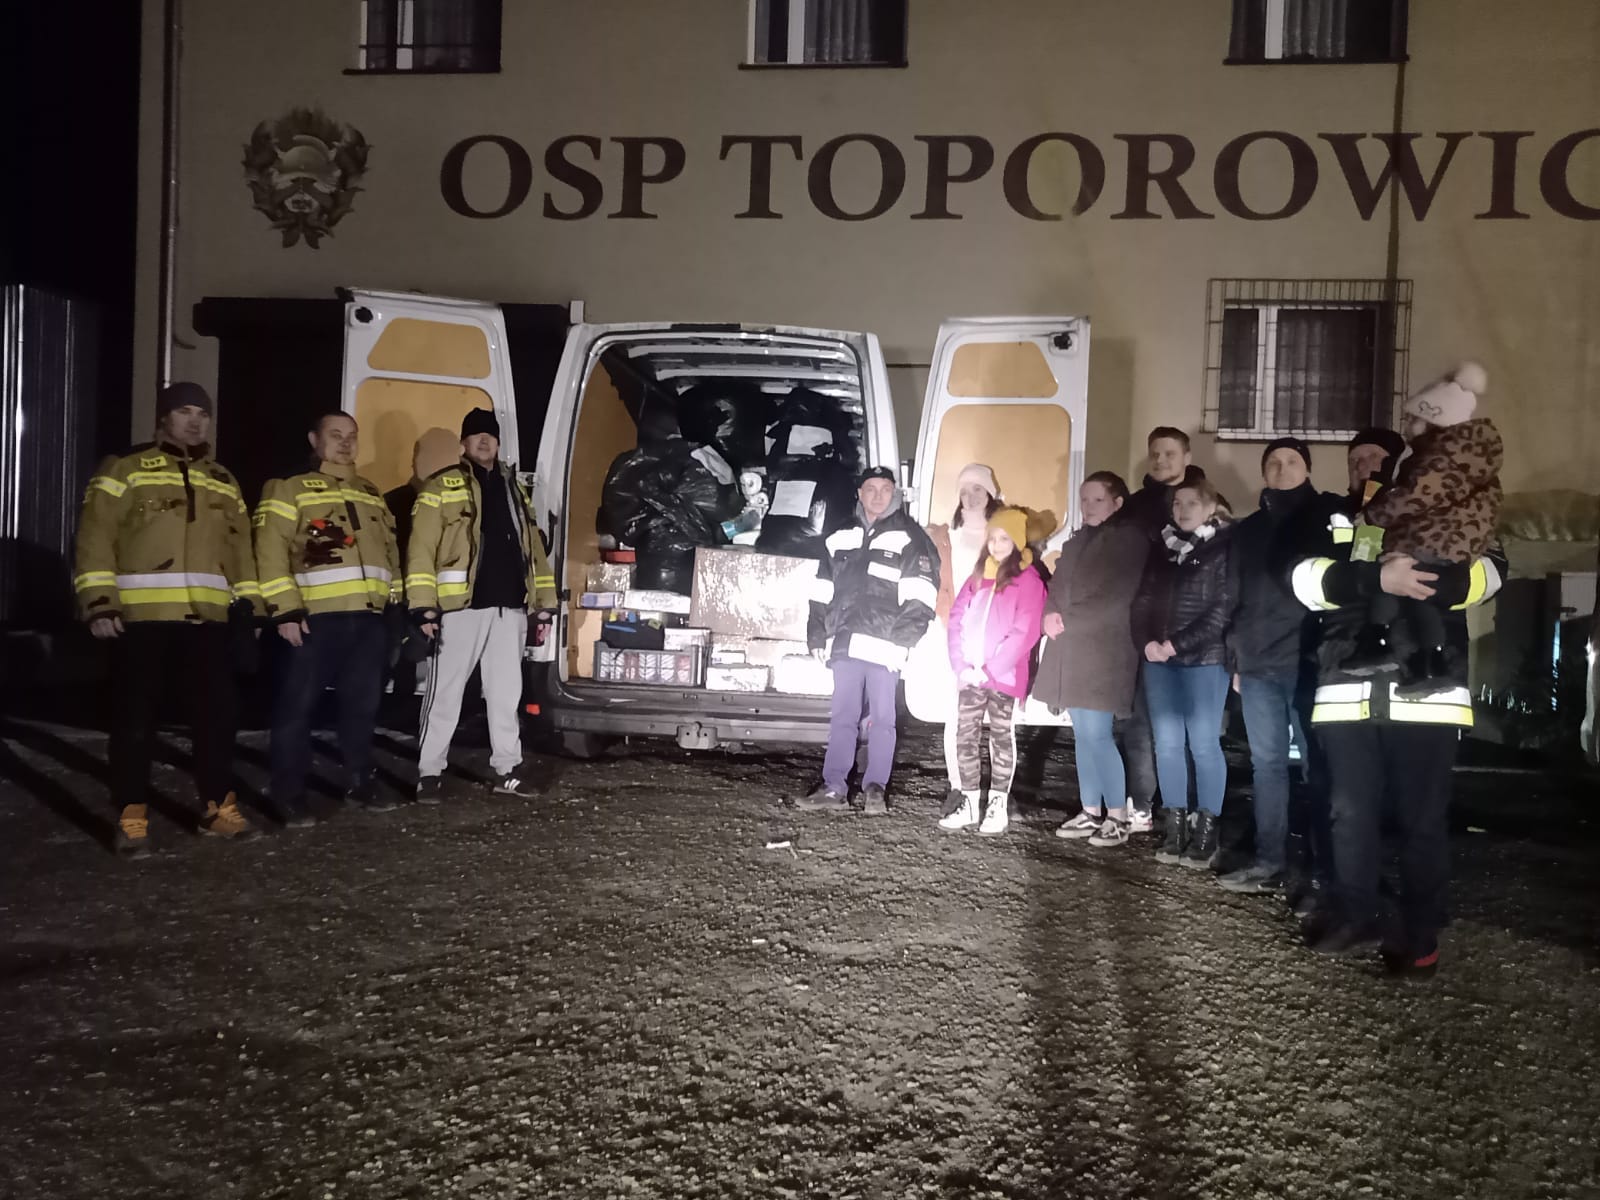 Zdjęcie przedstawiające załadowany darami samochód OSP oraz strażaków i ich przyjaciół na tle reminy OSP Toporowice